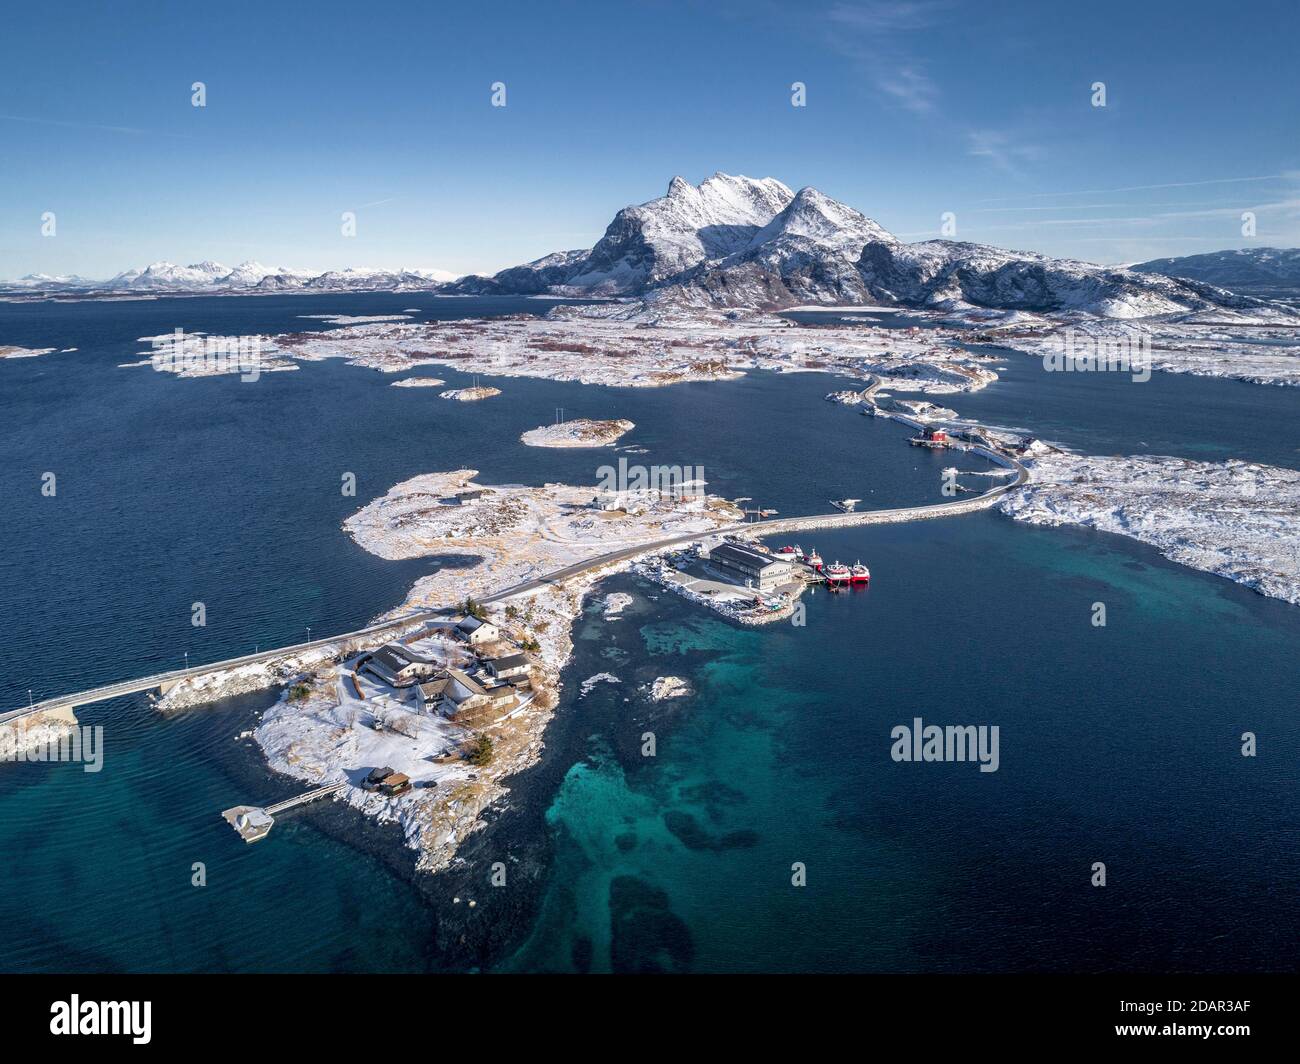 Luftbild, Landstraße durch das Meer verbindet besiedelte, kleine, winterliche Inseln mit dem Festland, hinter Bergen, Heroy, Nordland, Norwegen Stockfoto